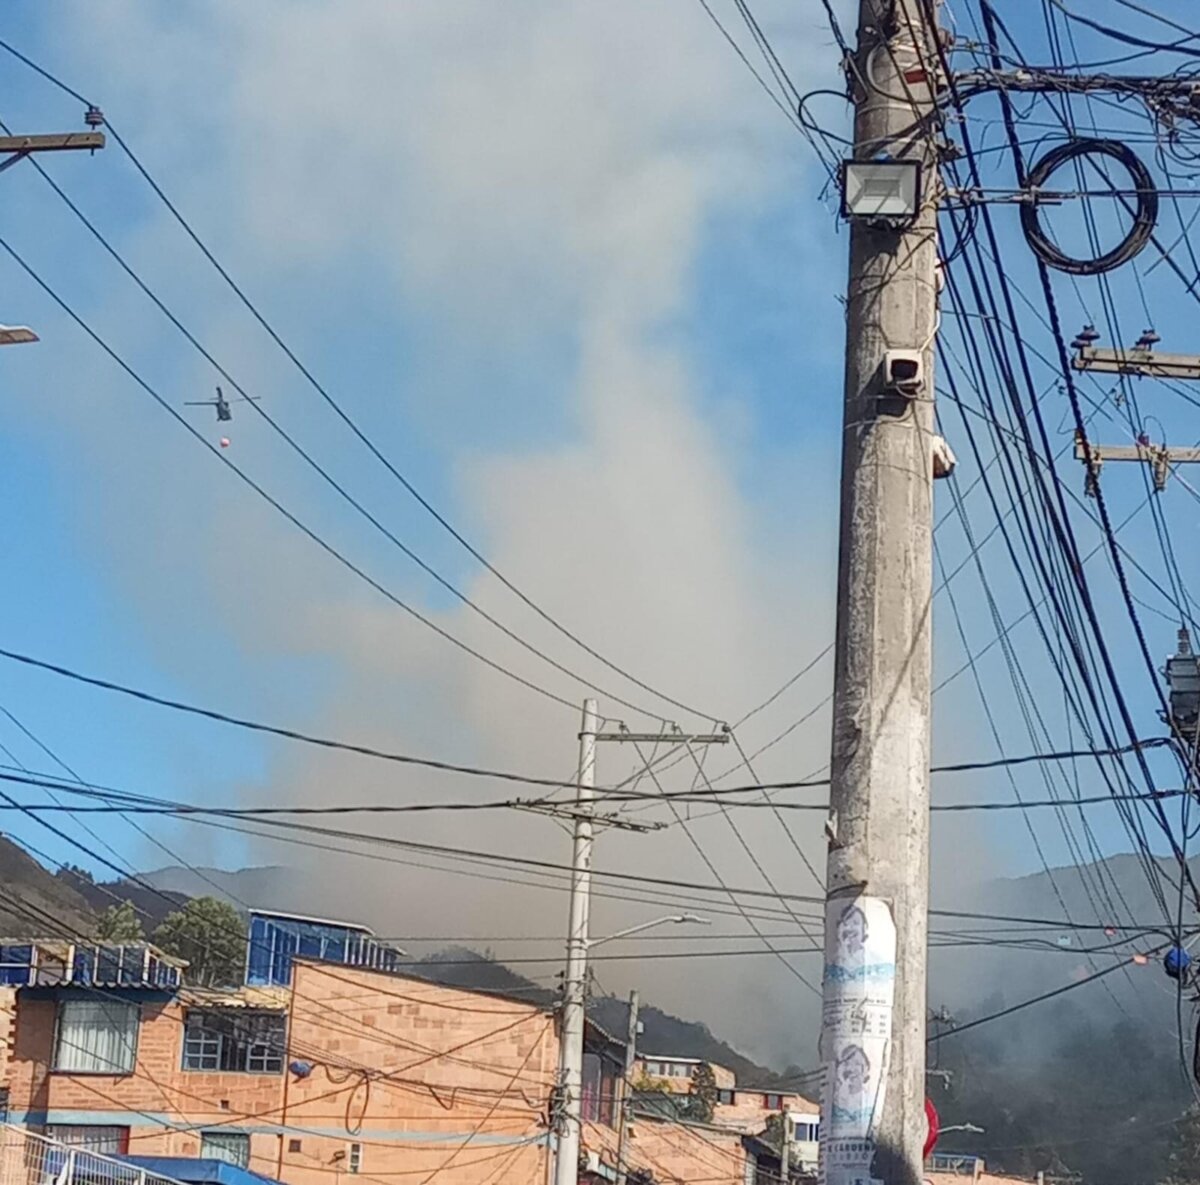 EN VIDEO: Se registra nuevo incendio forestal en la localidad de Usme Desde las dos de la tarde de este lunes, la Alcaldía de Bogotá y el Cuerpo Oficial de Bomberos reportaron un nuevo incendio en la localidad de Usme.